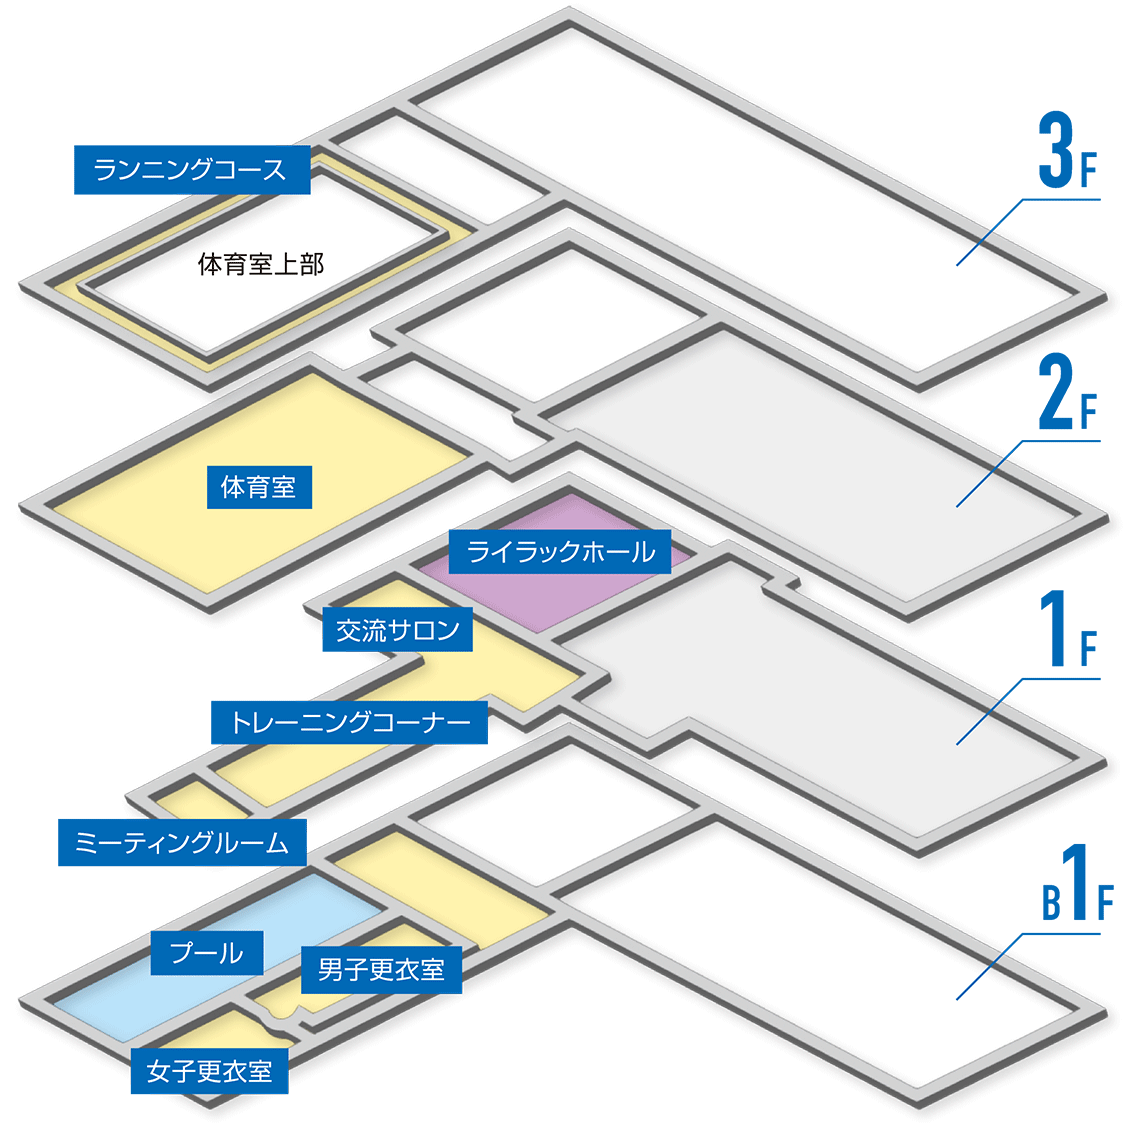 Изображение руководства по этажам, карта каждого этажа